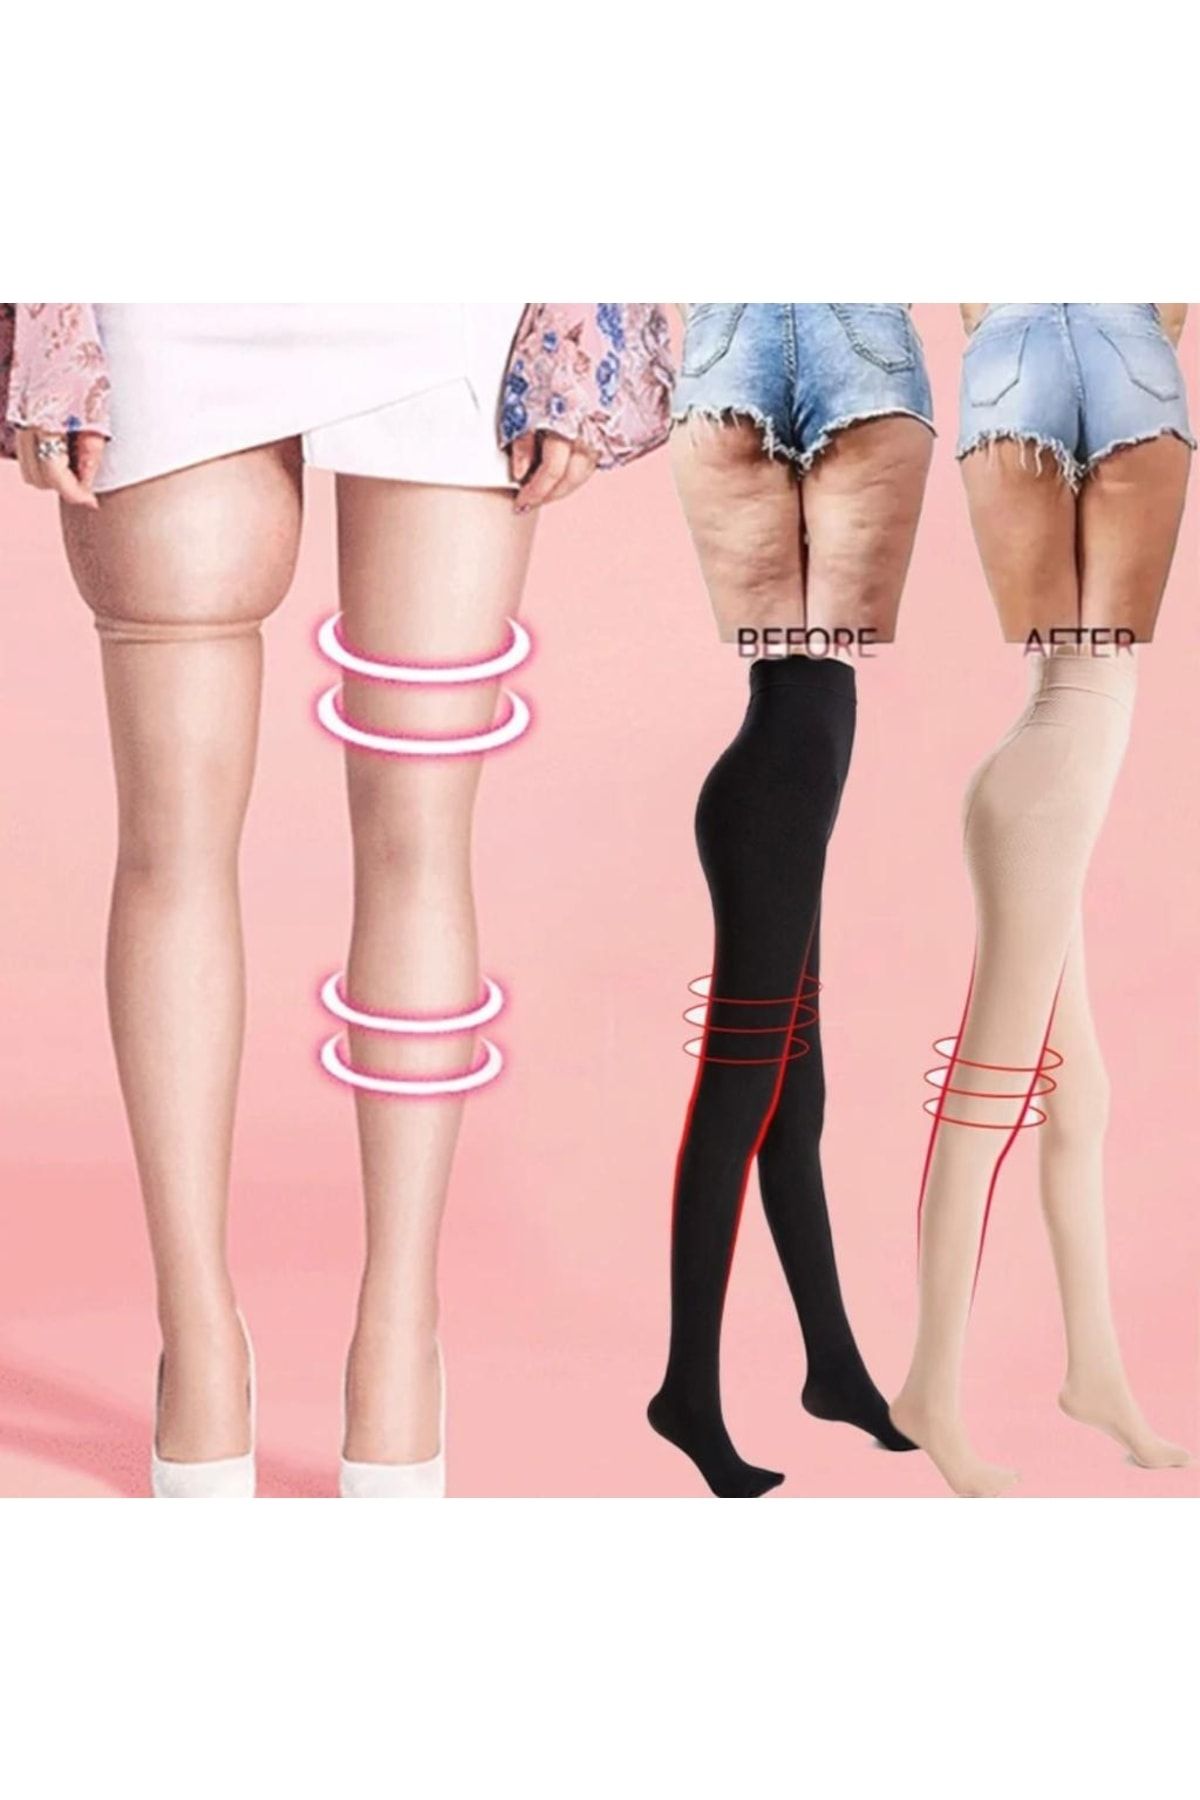 F&W FİT WOMEN 2 Beden Incelten Şekilendirici Popo Kaldıran Korse Kilotlu Çorap